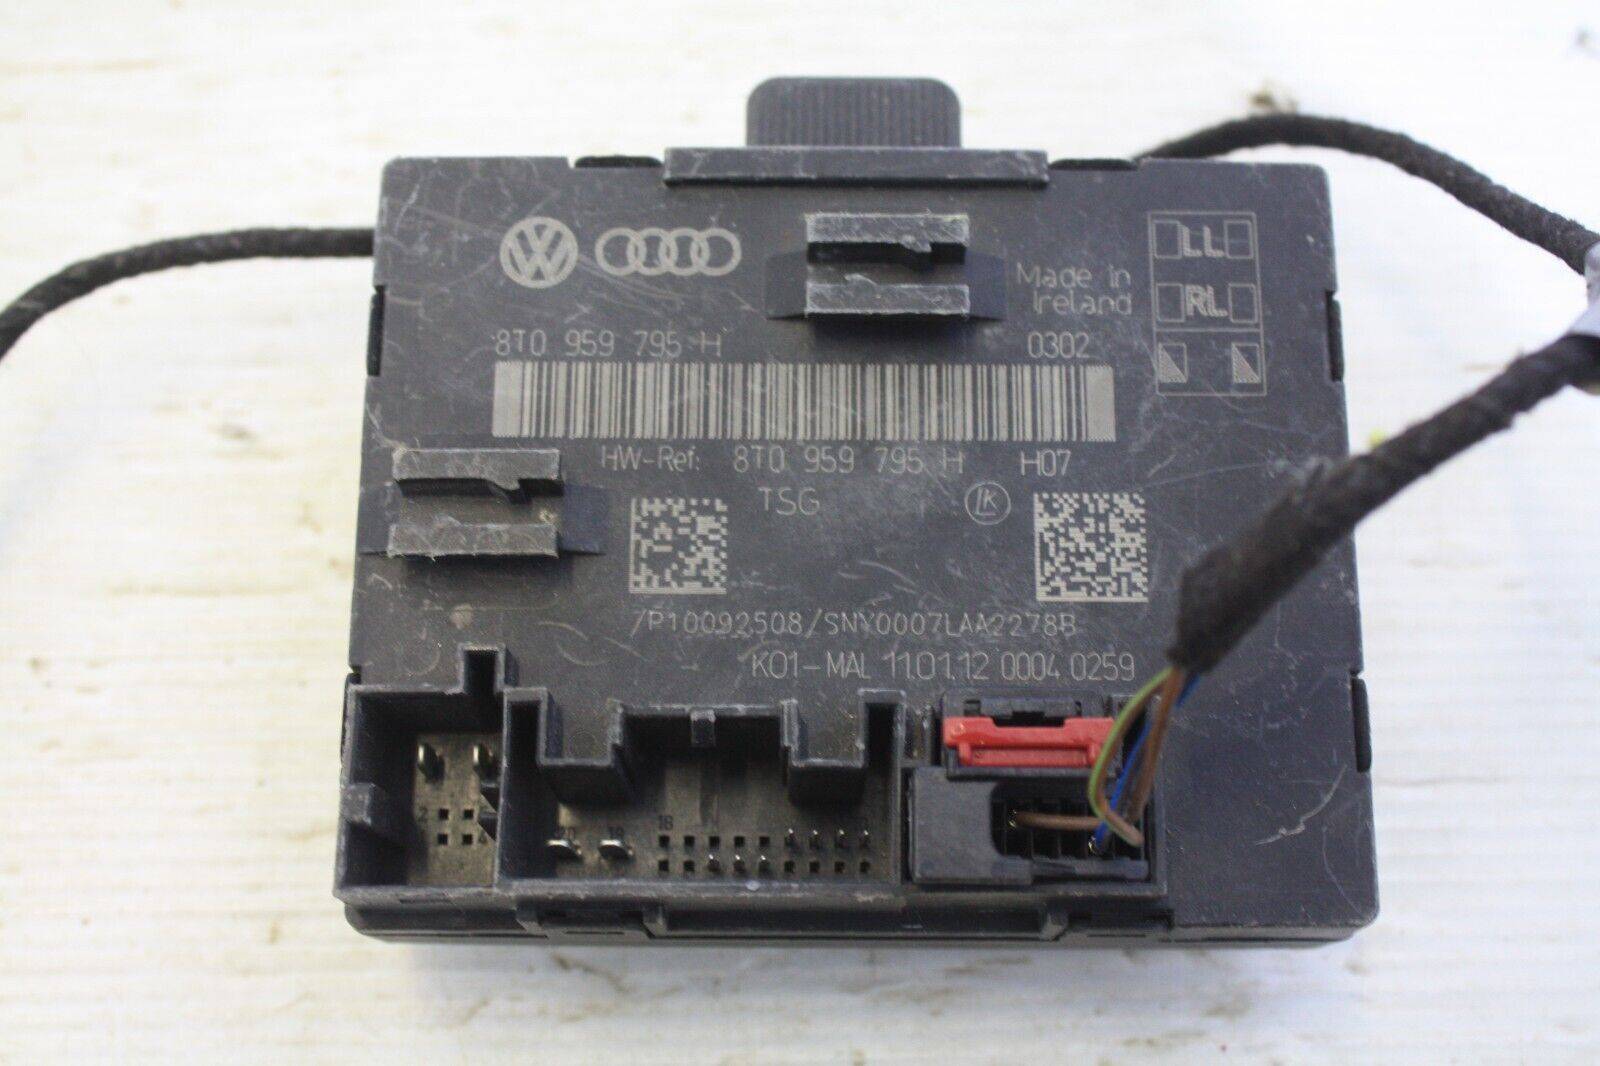 Audi-A5-Rear-Left-Door-Control-Module-8T0959795H-Genuine-176101686279-2